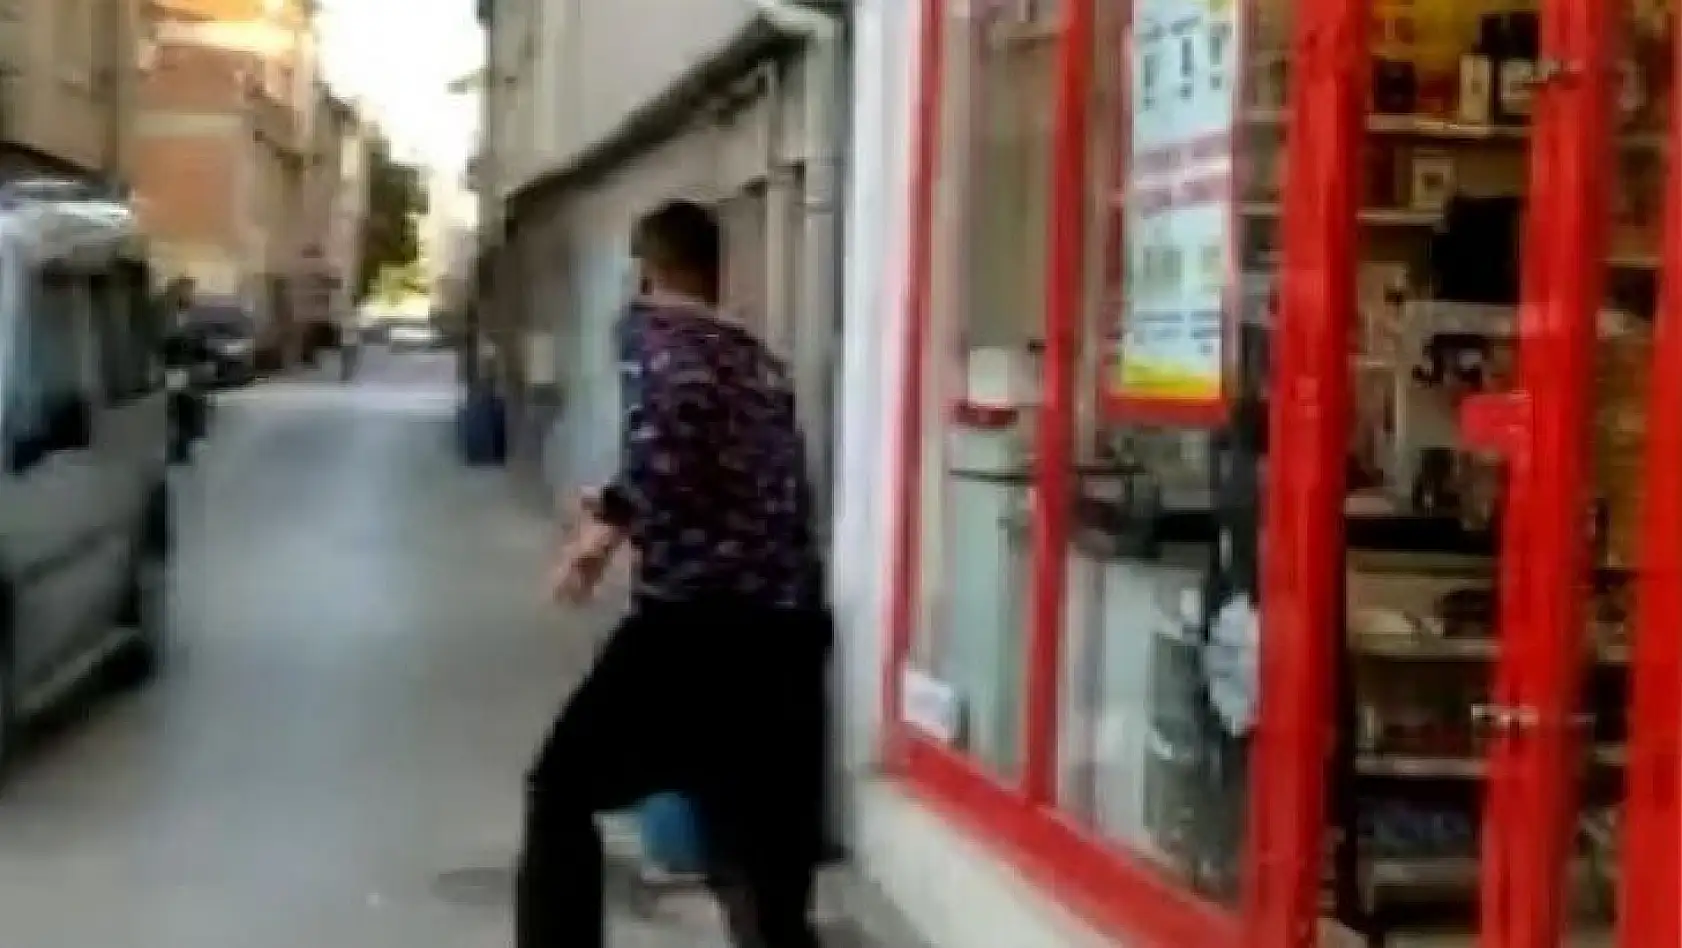 (Özel) - Bursa'da markete kilitlenen hırsız camı kırarak böyle kaçtı